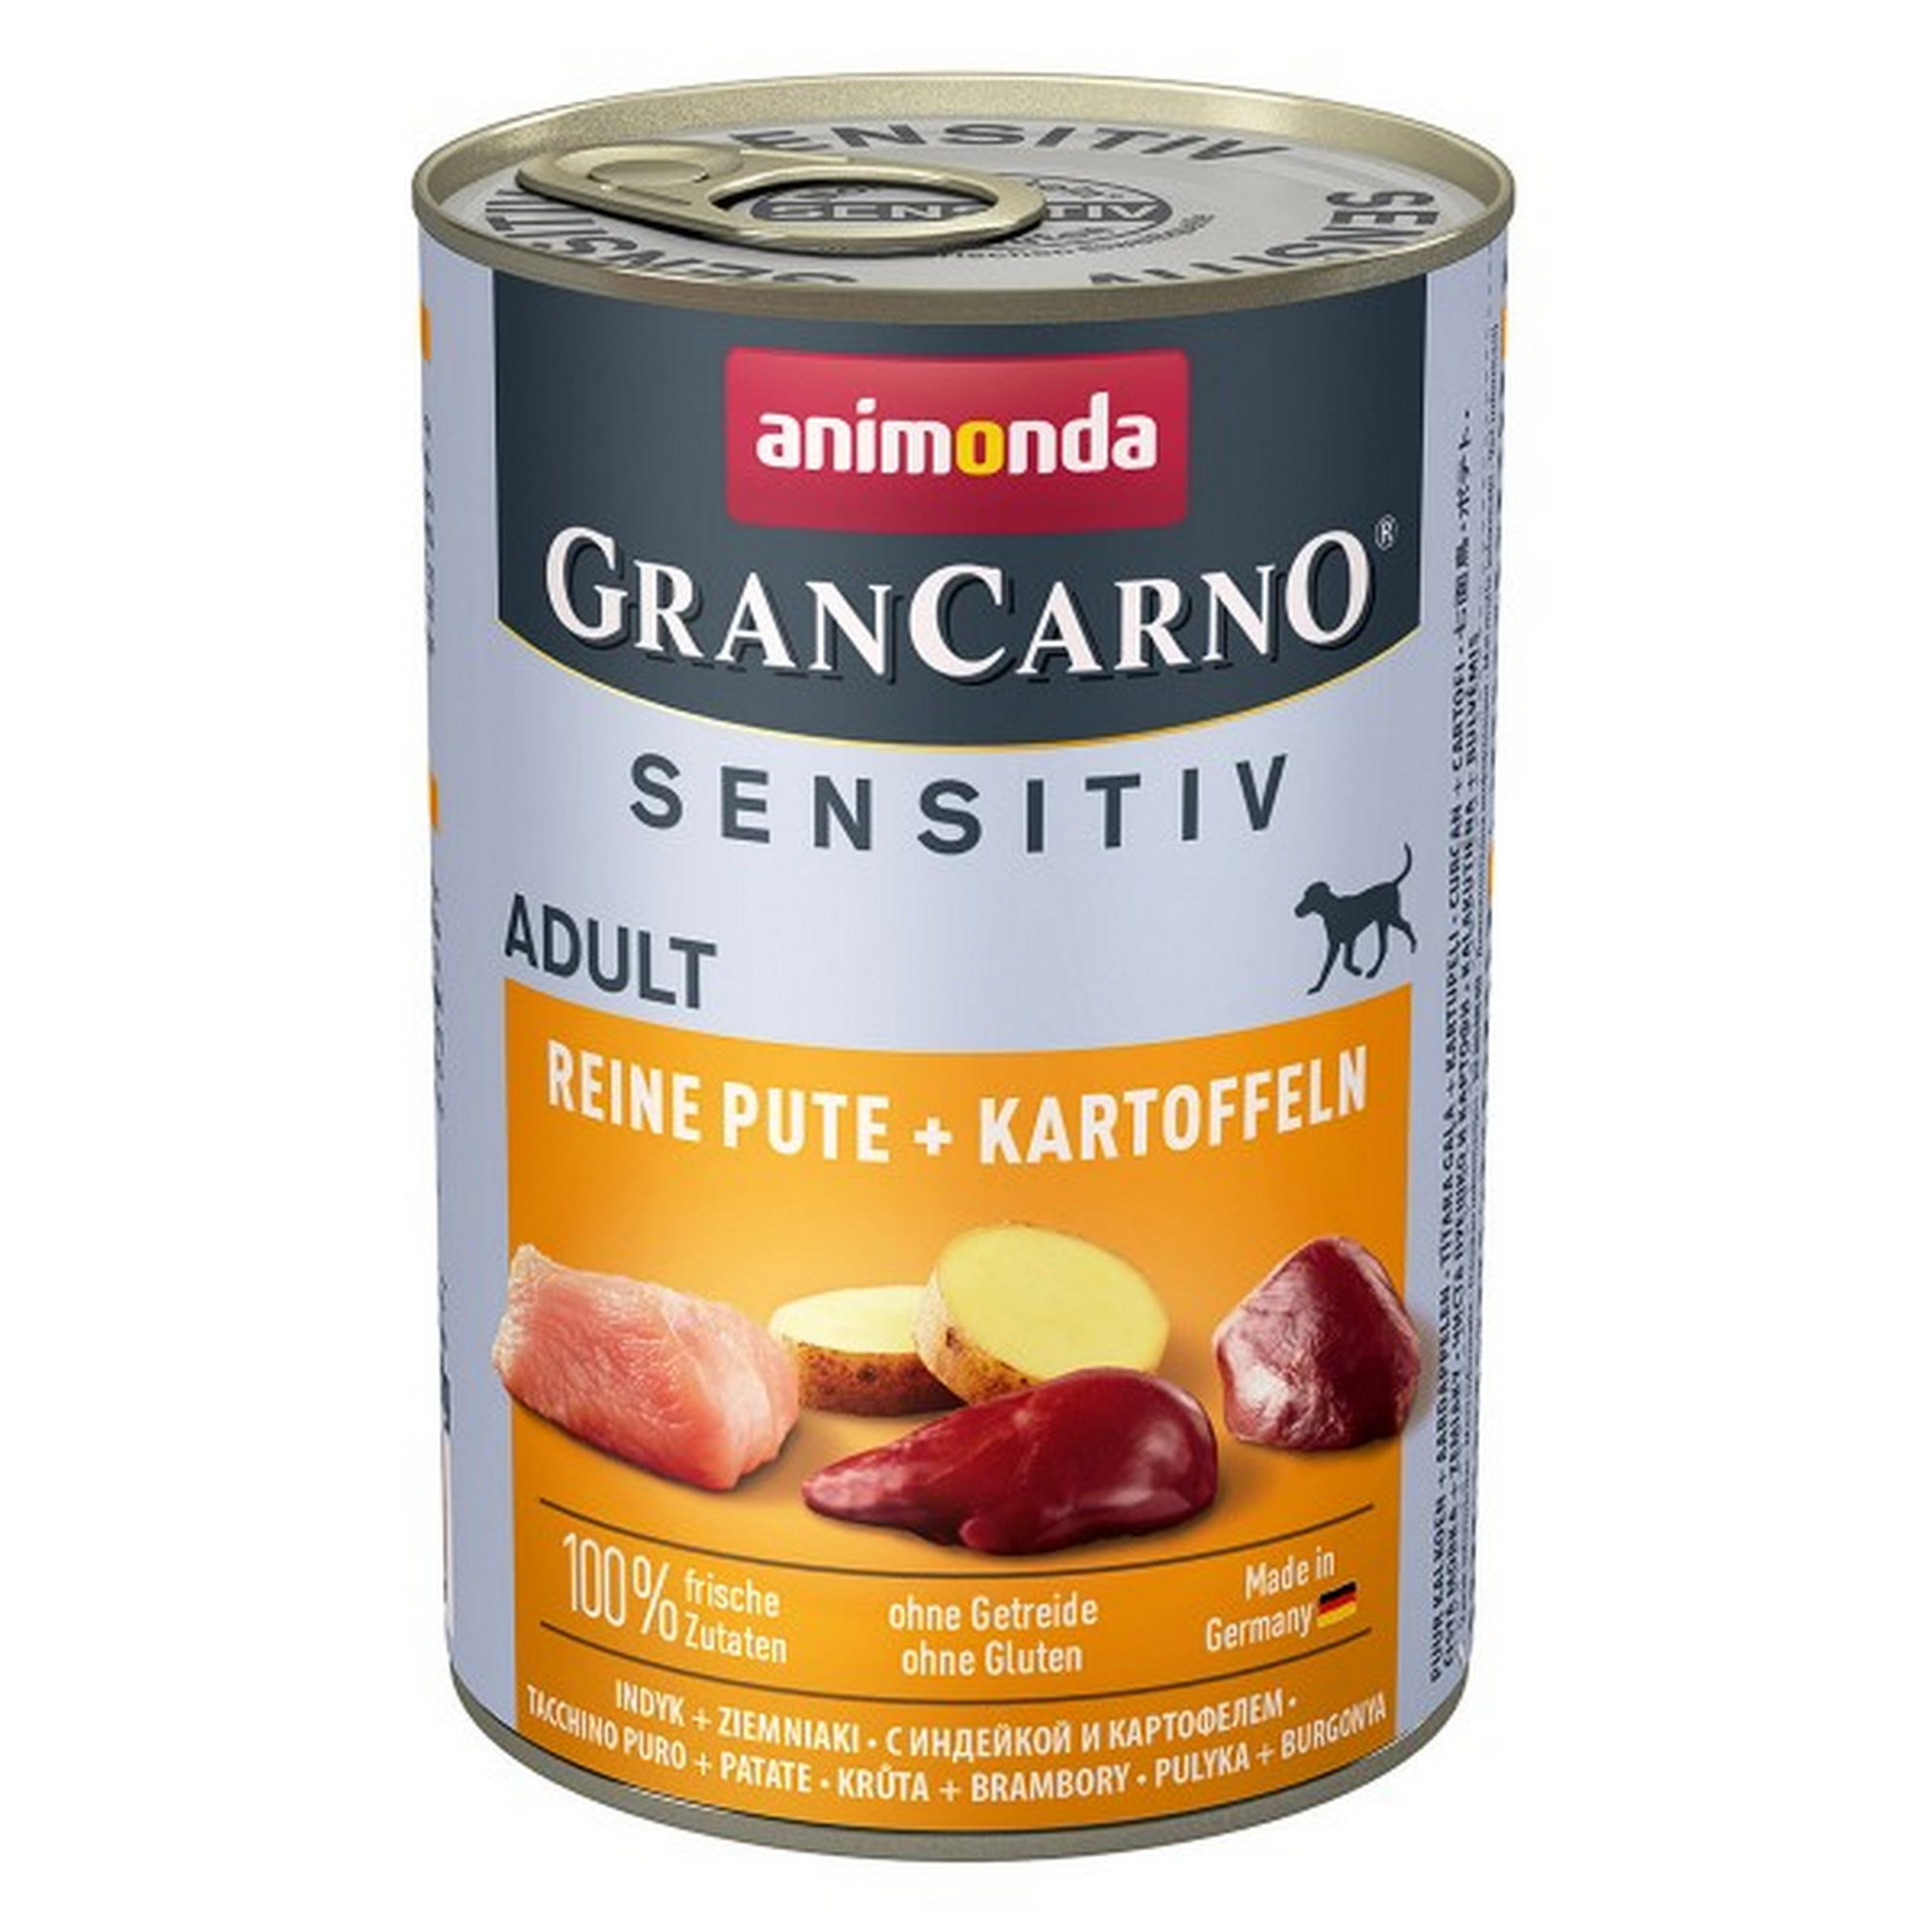 Hundenassfutter 'GranCarno' Sensitiv reine Pute und Kartoffeln 400 g + product picture